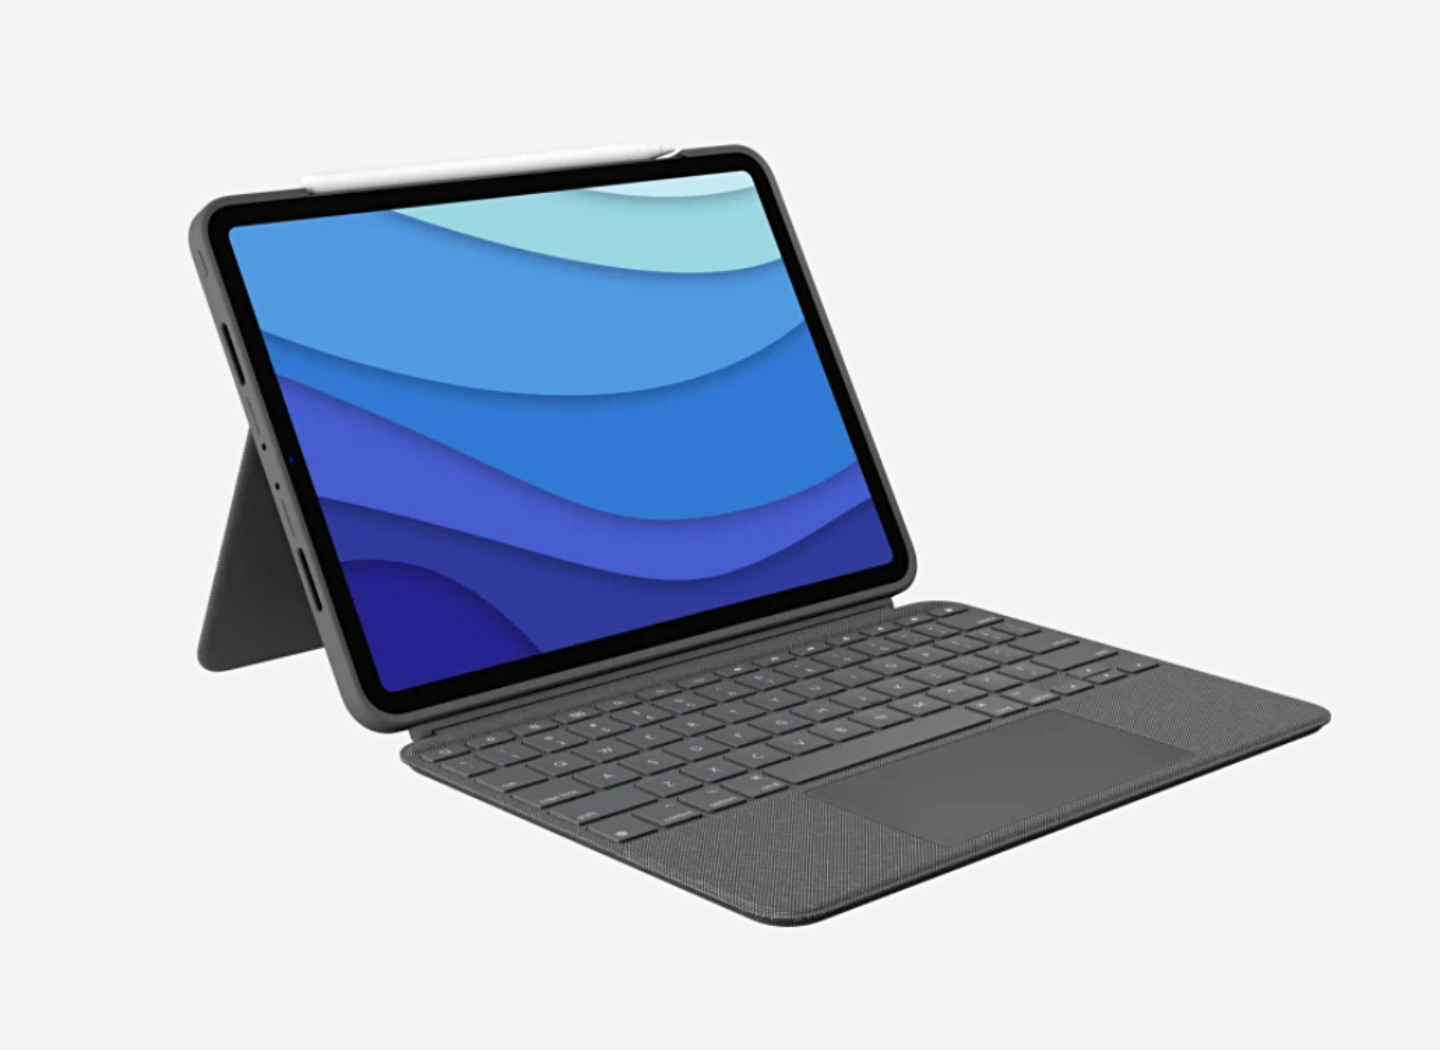 羅技推出『 Combo Touch 』鍵盤保護殼 12.9 吋和 11 吋的新款 iPad Pro 都適用！